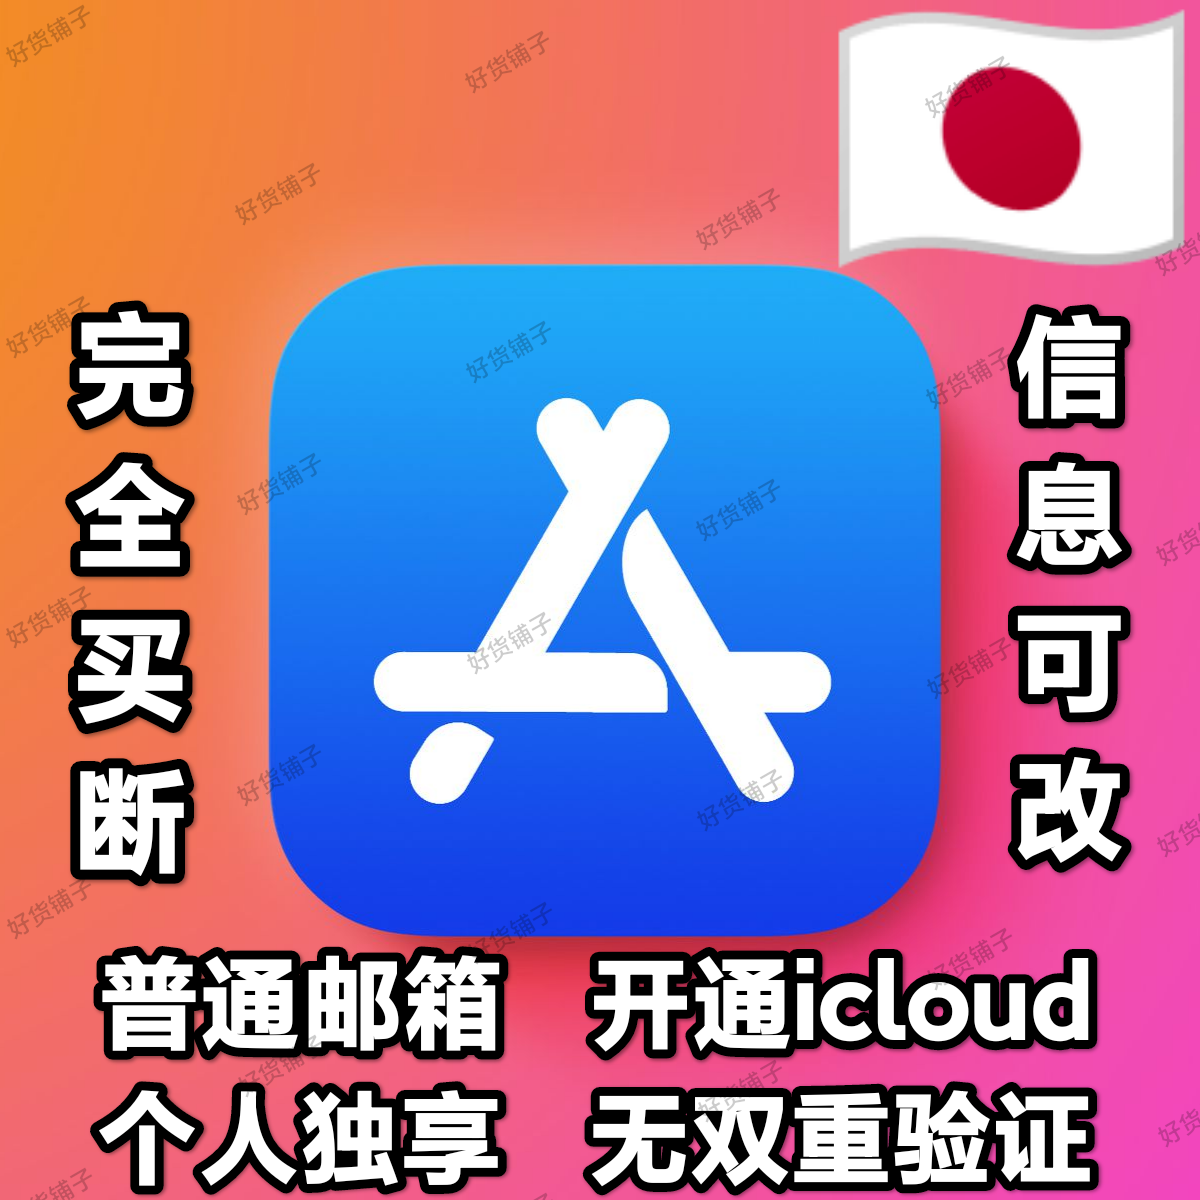 日本全新普通邮箱空白苹果id（无双重验证）（激活iCloud）（自动发货）（教程和说明注意都在下面的详情，请看完）